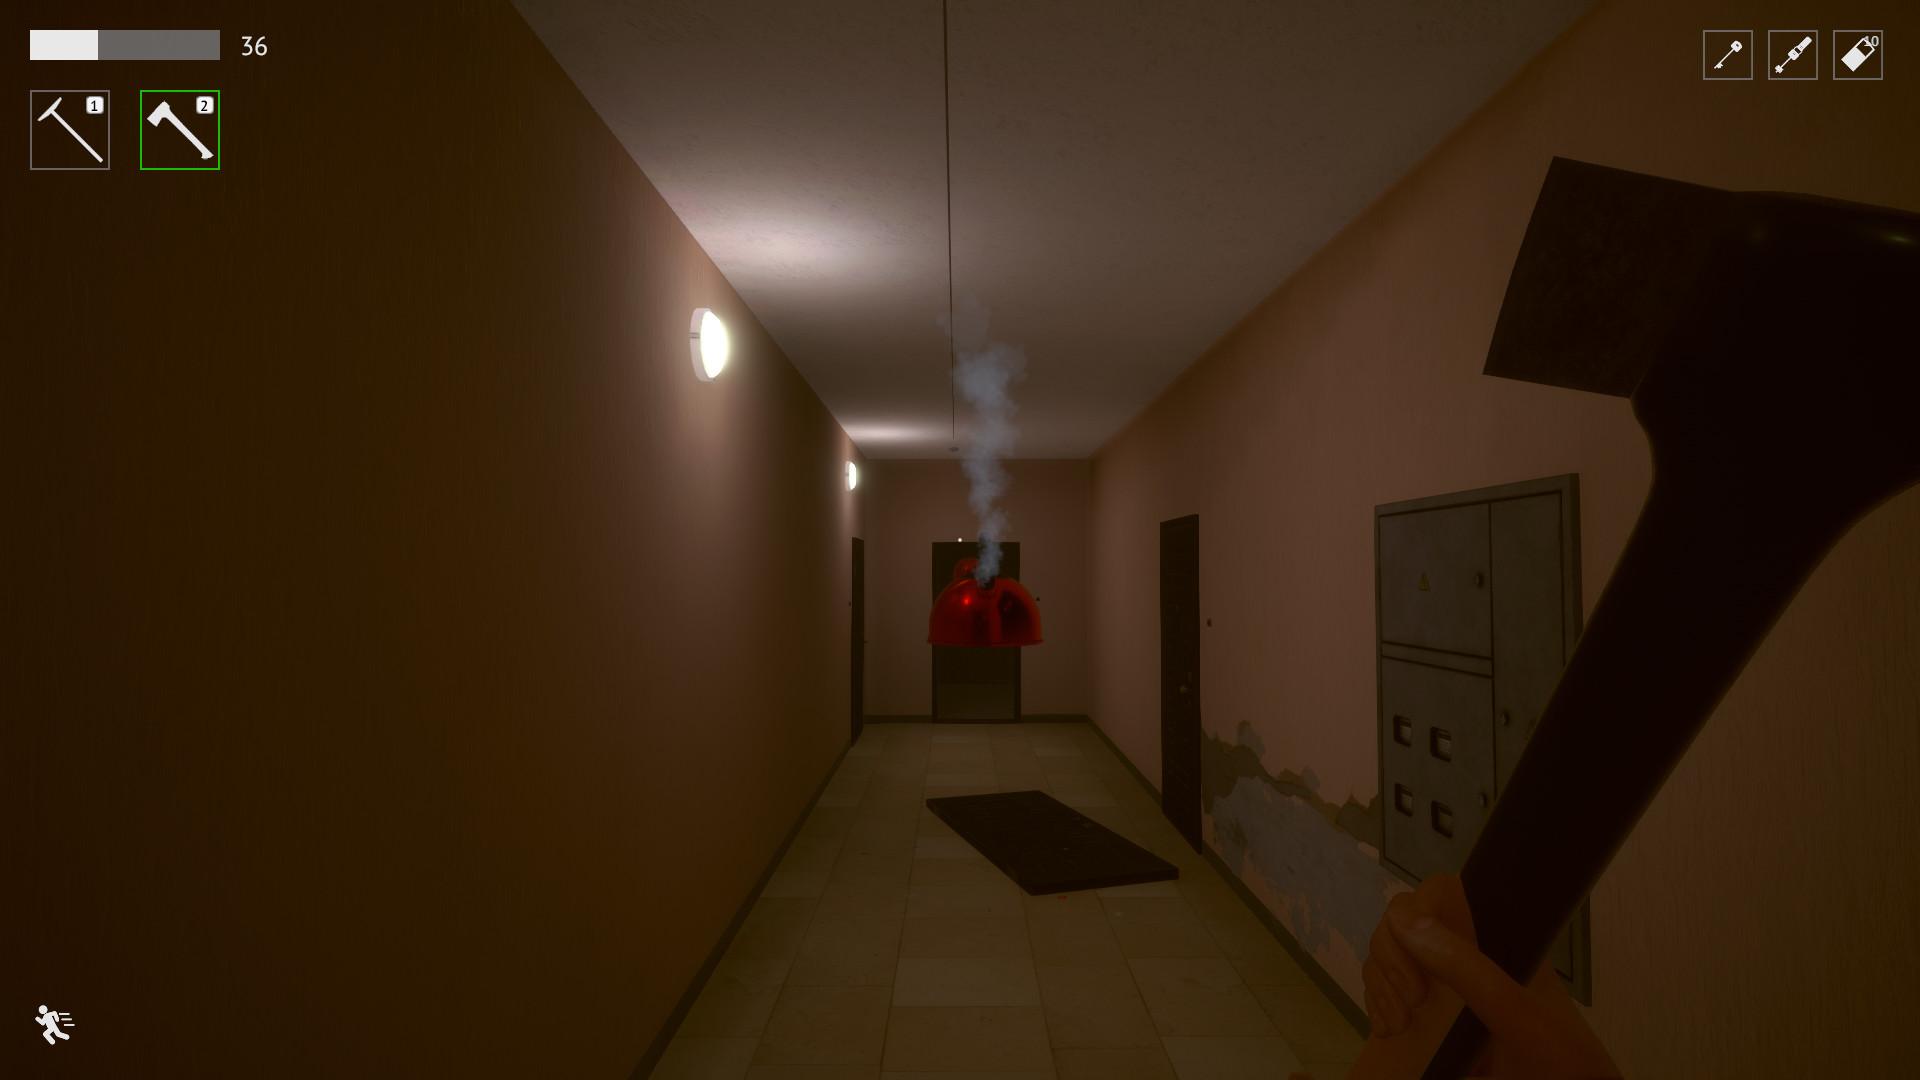 Screenshot №6 from game Last Floor